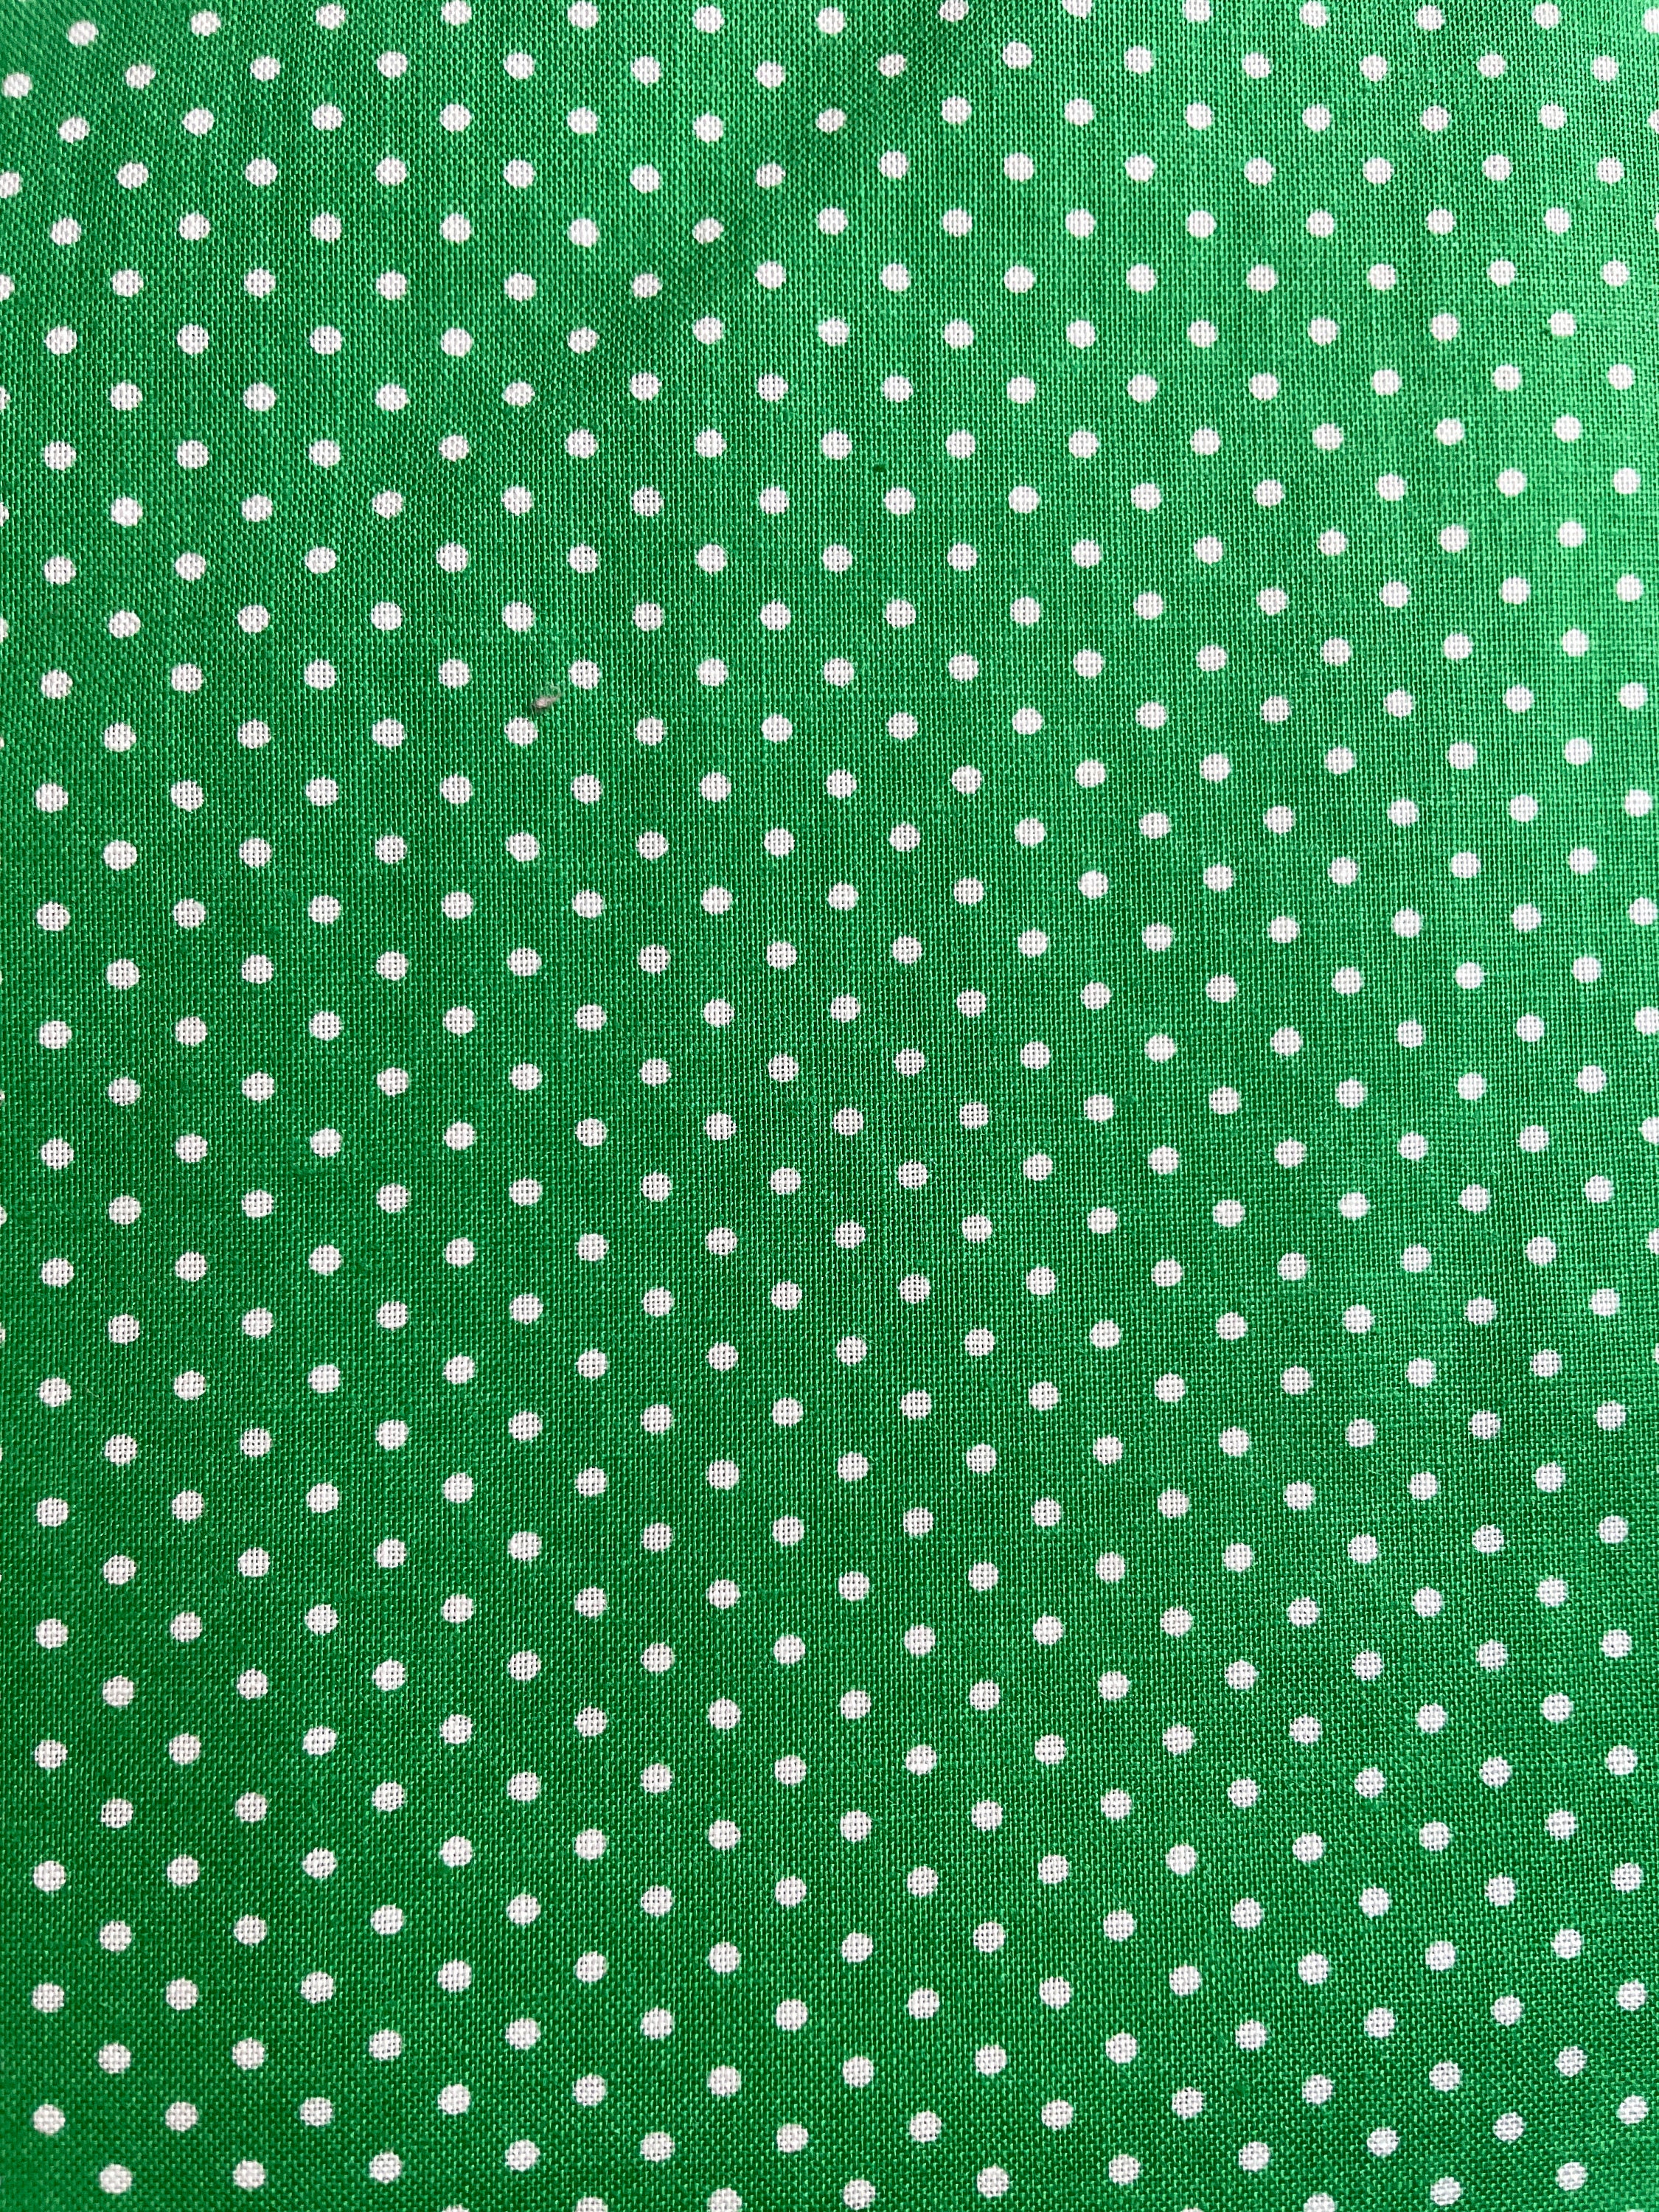 Green Polka Dot 